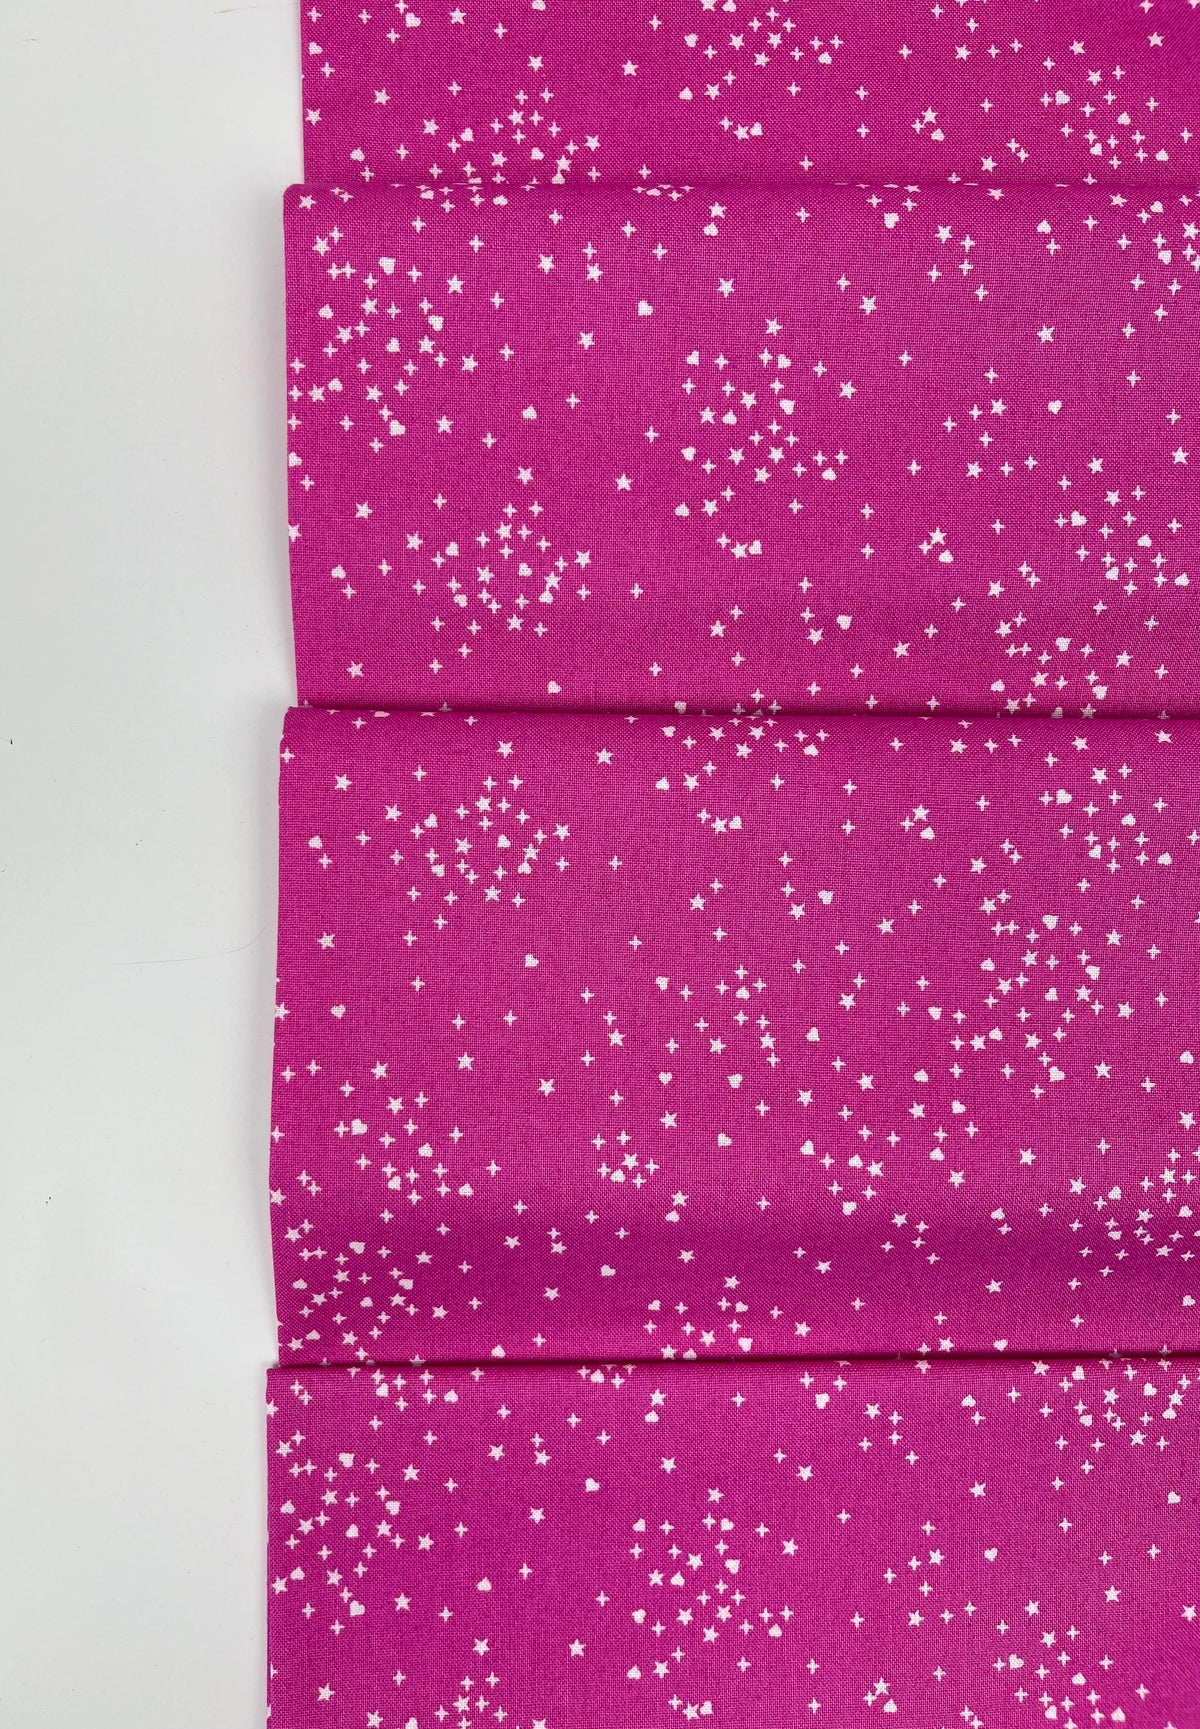 Hearts & Stars // Pink // Andover Fabrics